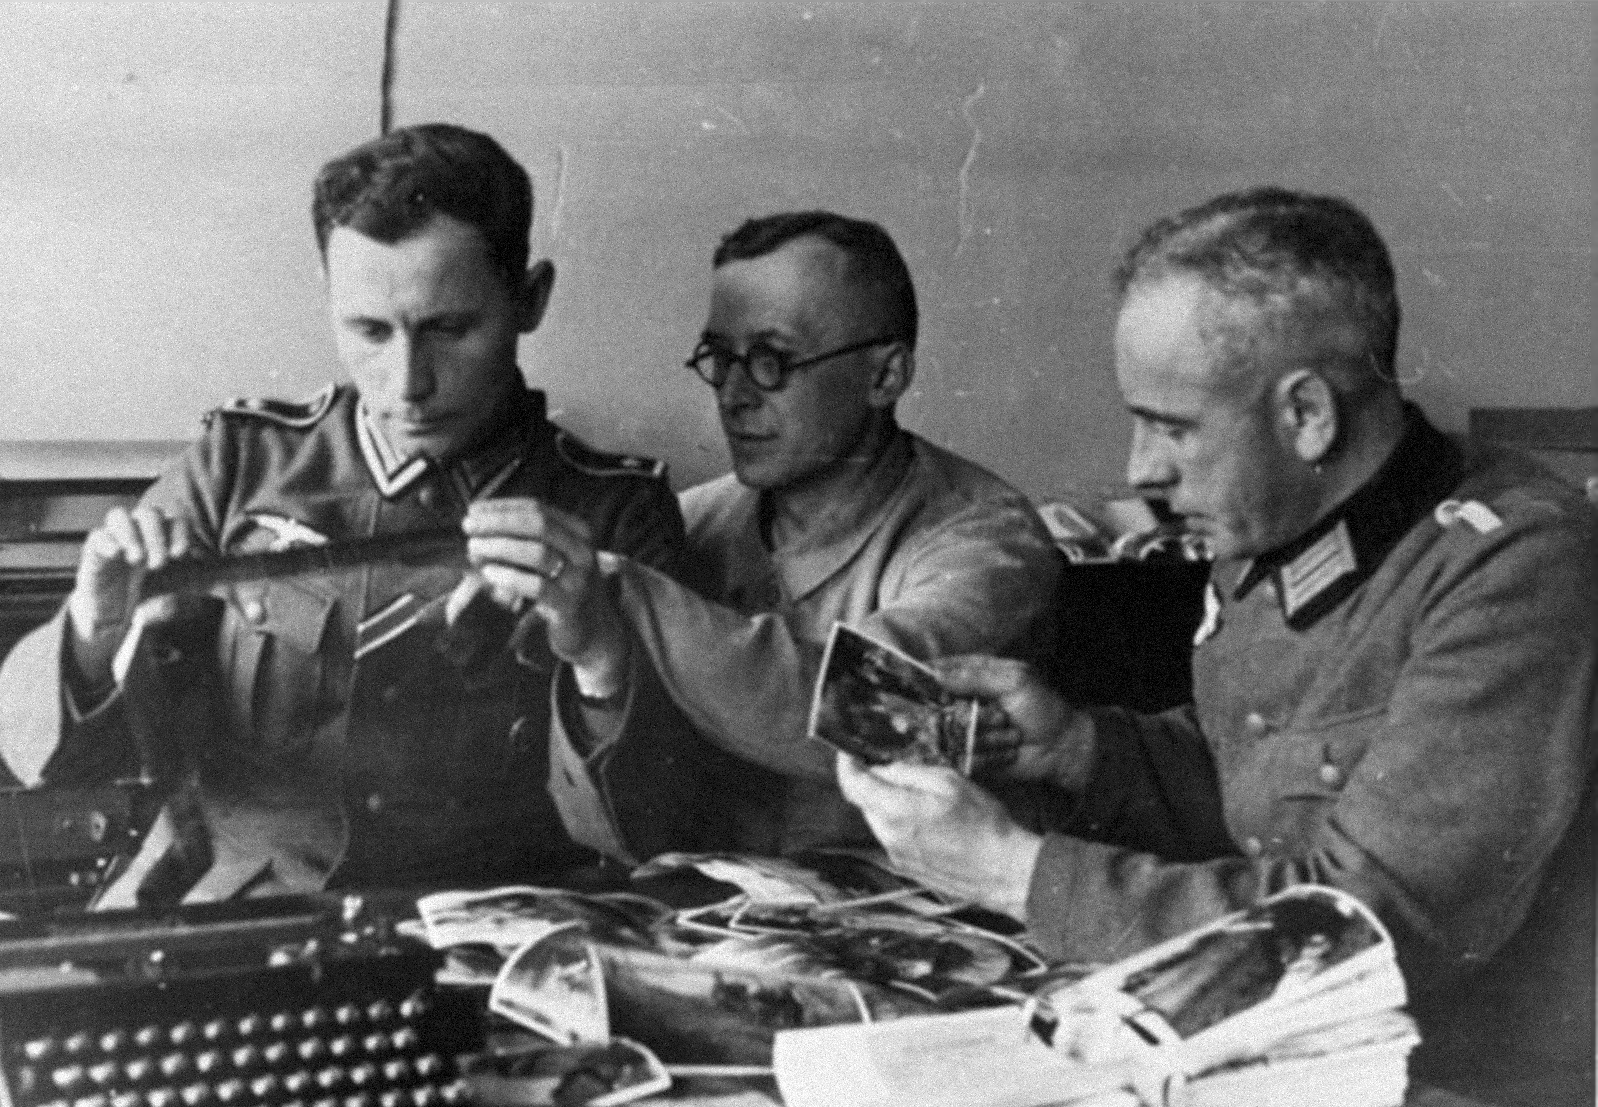 Żołnierze kompanii propagandowych przy przeglądaniu materiałów, marzec 1940. Fot. Bundesarchiv/Wikimedia Commons